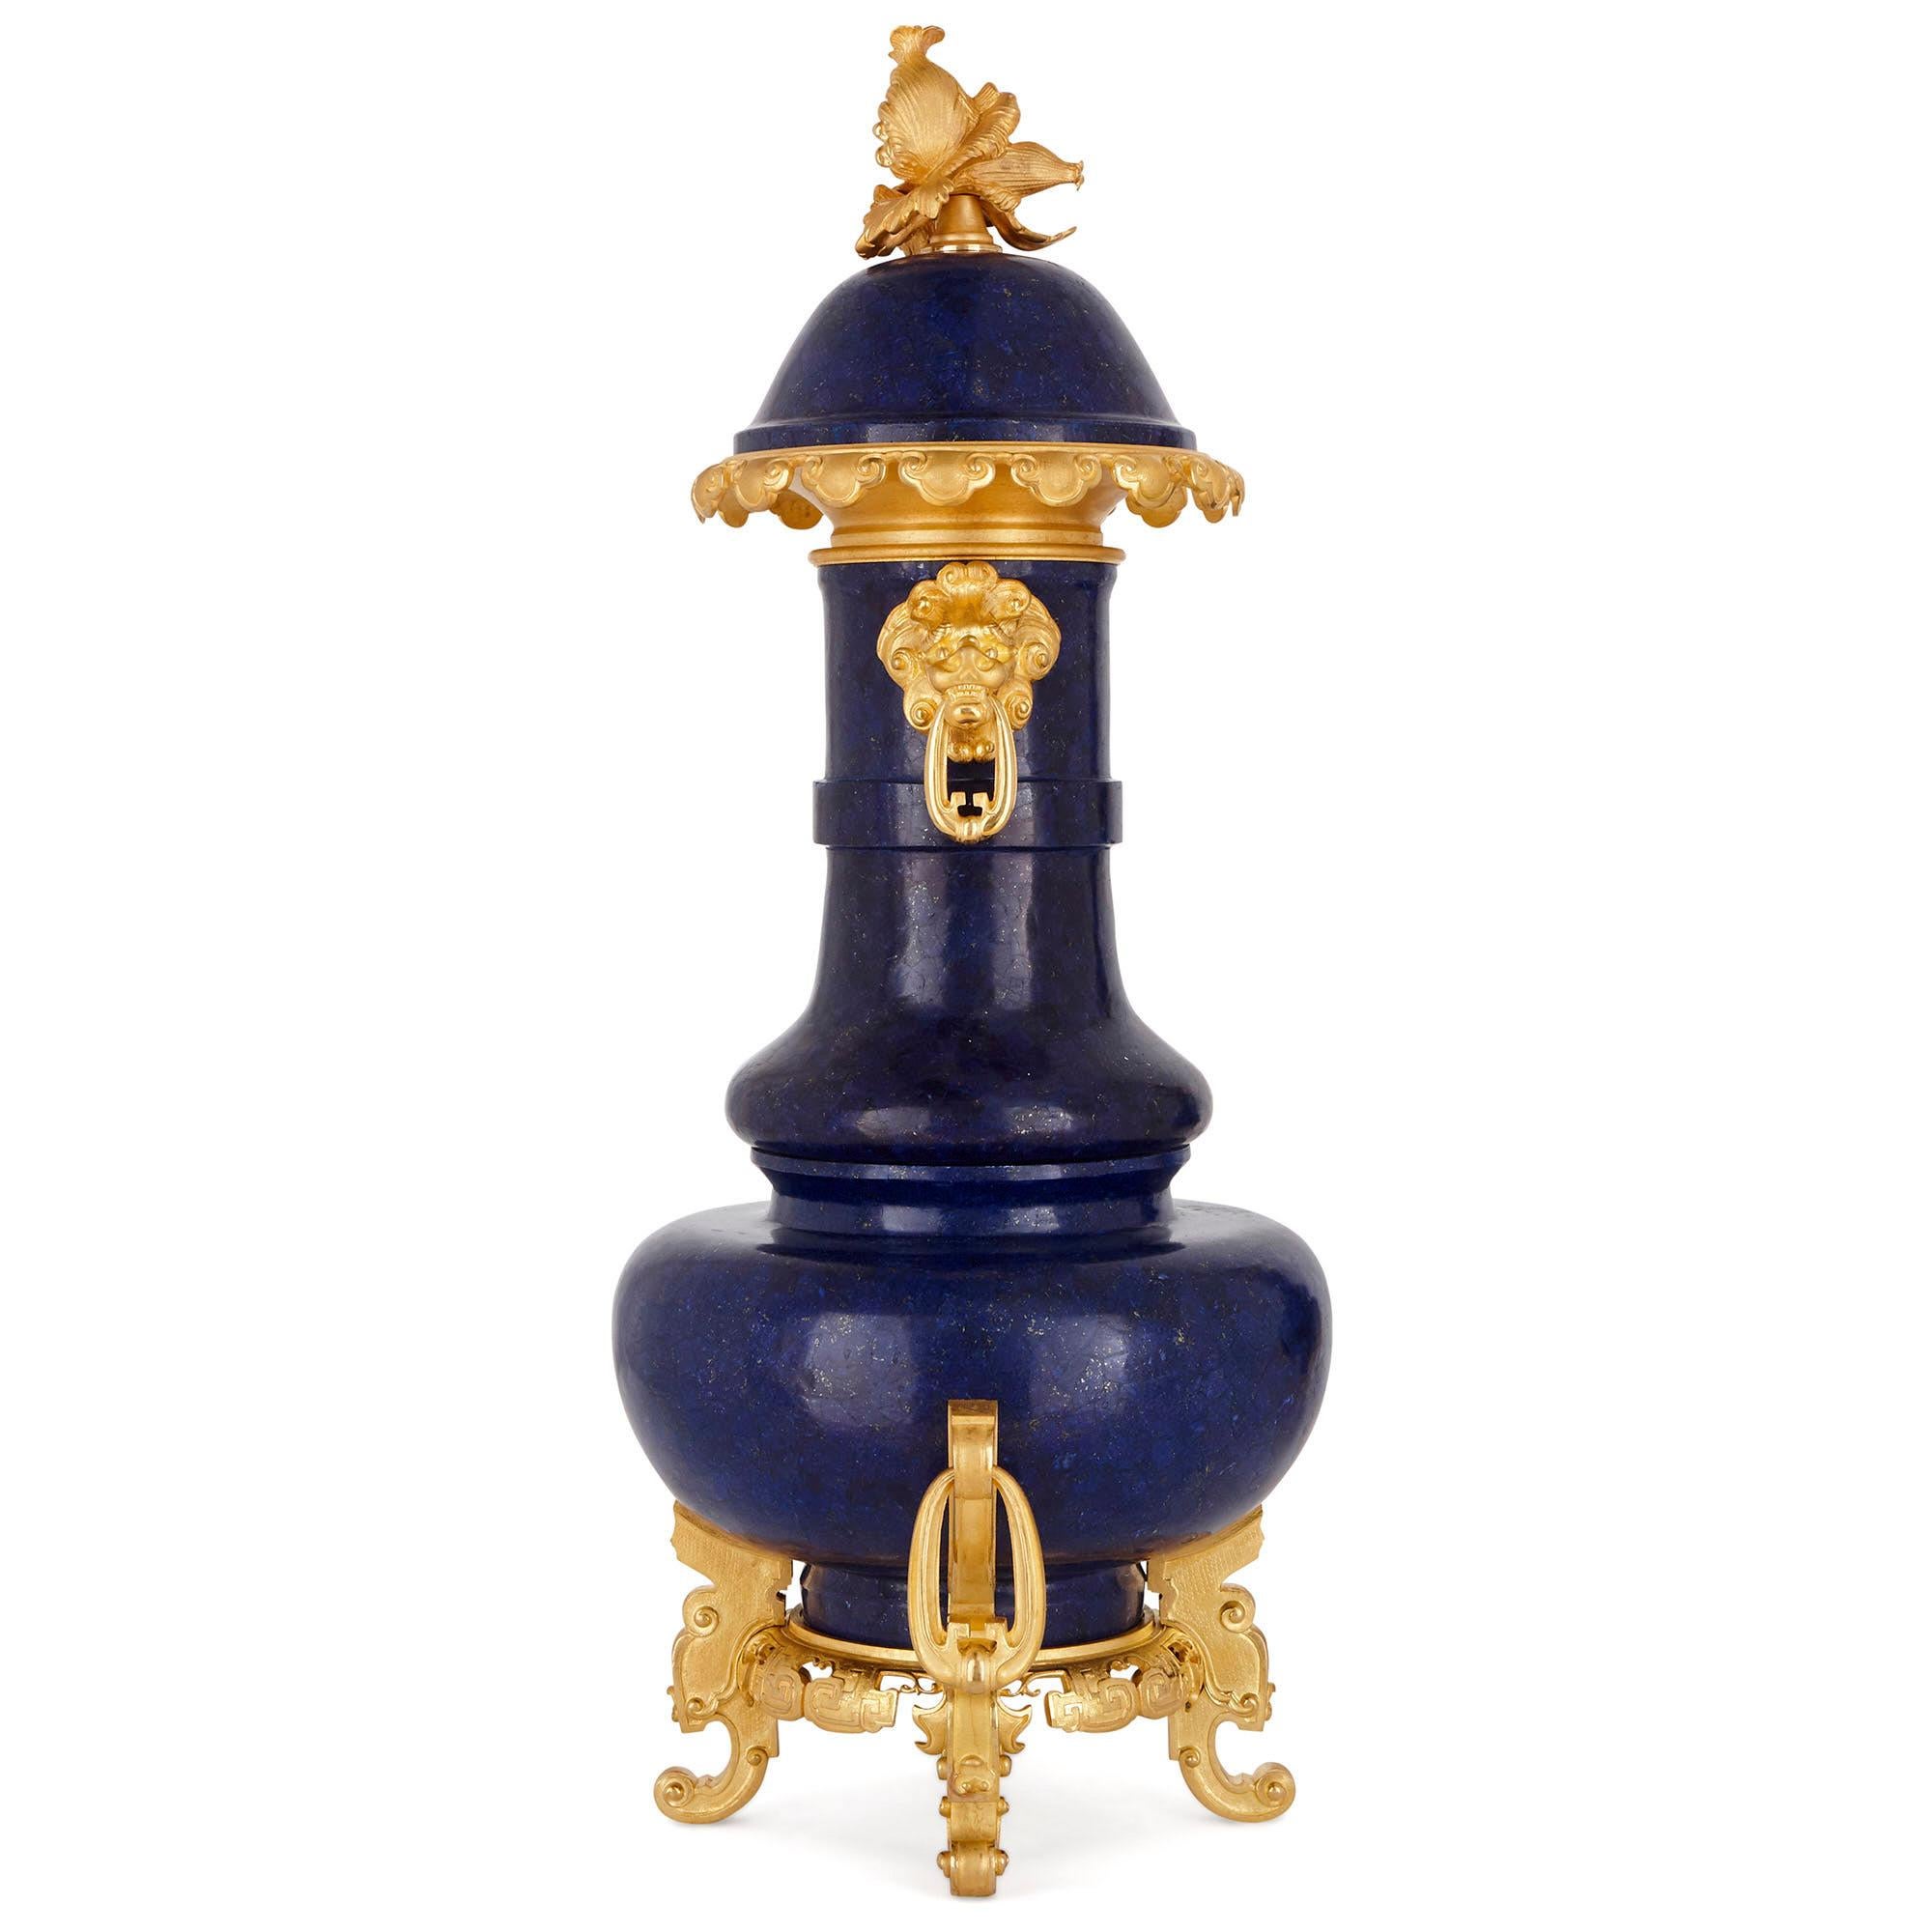 Diese Urne (oder Vase) wurde aus den feinsten Materialien gefertigt: dem tiefblauen Edelstein Lapislazuli und der glänzenden vergoldeten Bronze (Ormolu). Die Urne ist im so genannten 